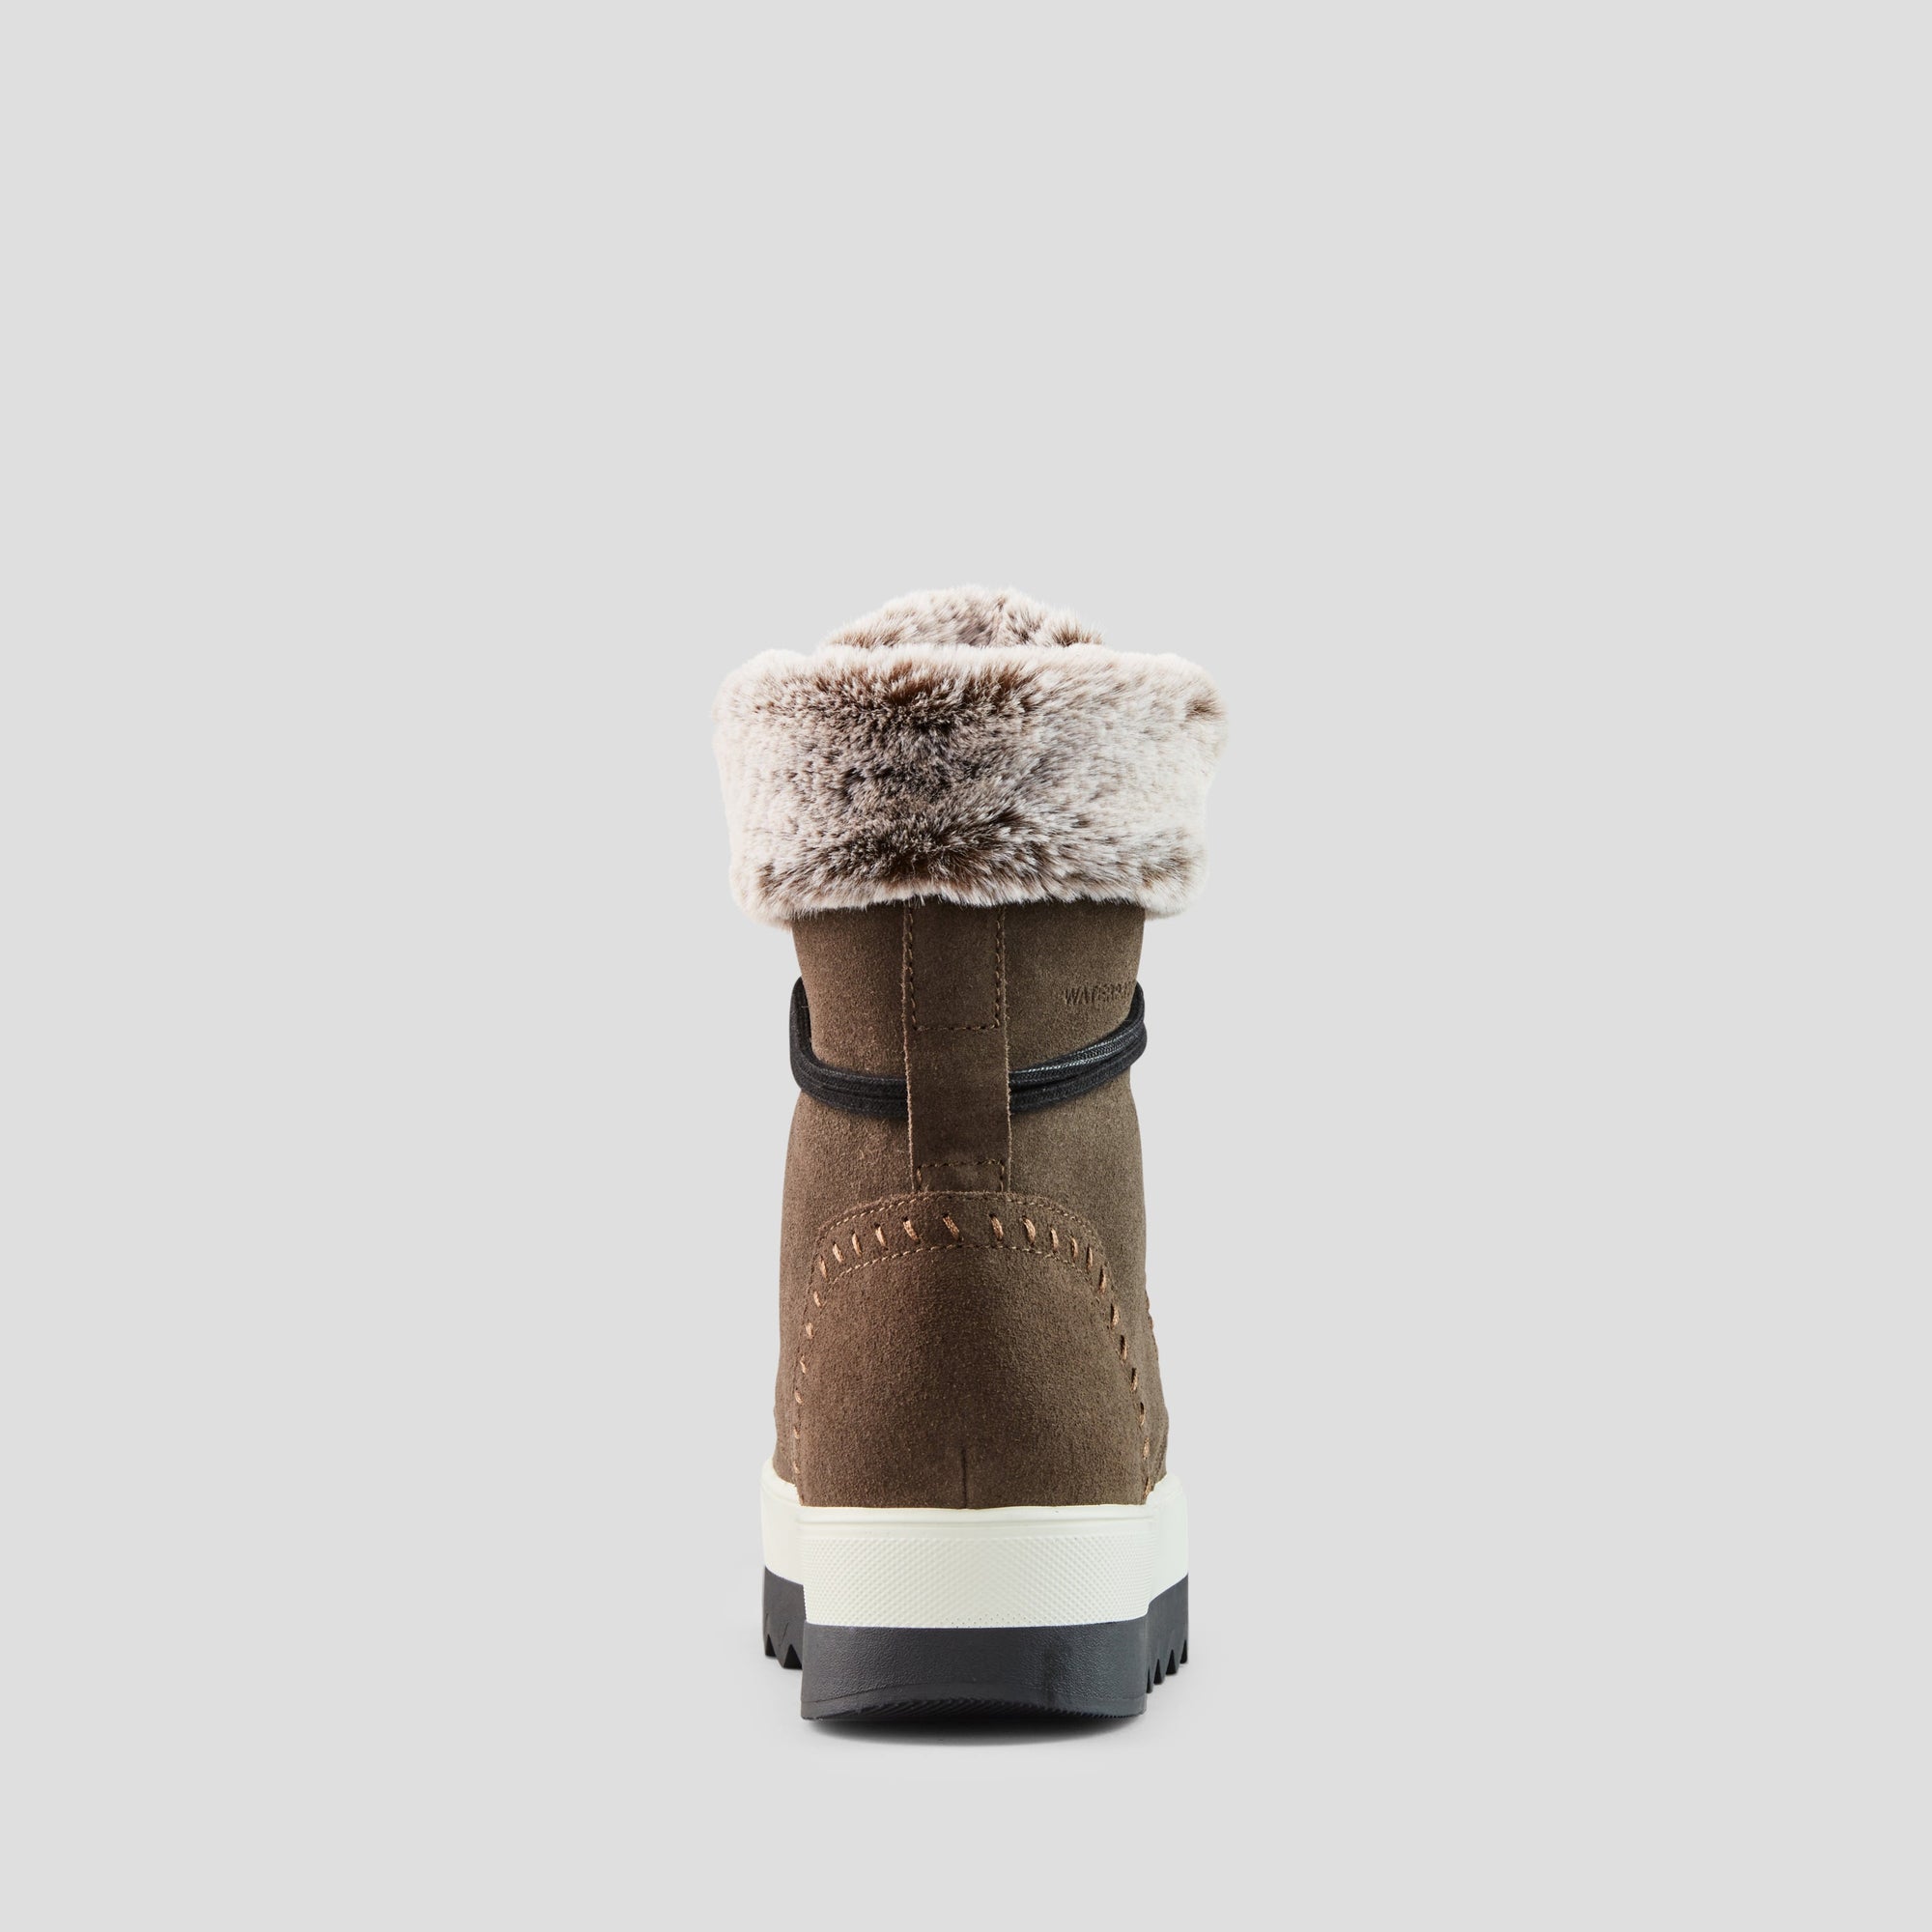 Vanetta - Botte d'hiver imperméable en suède - Colour Loden